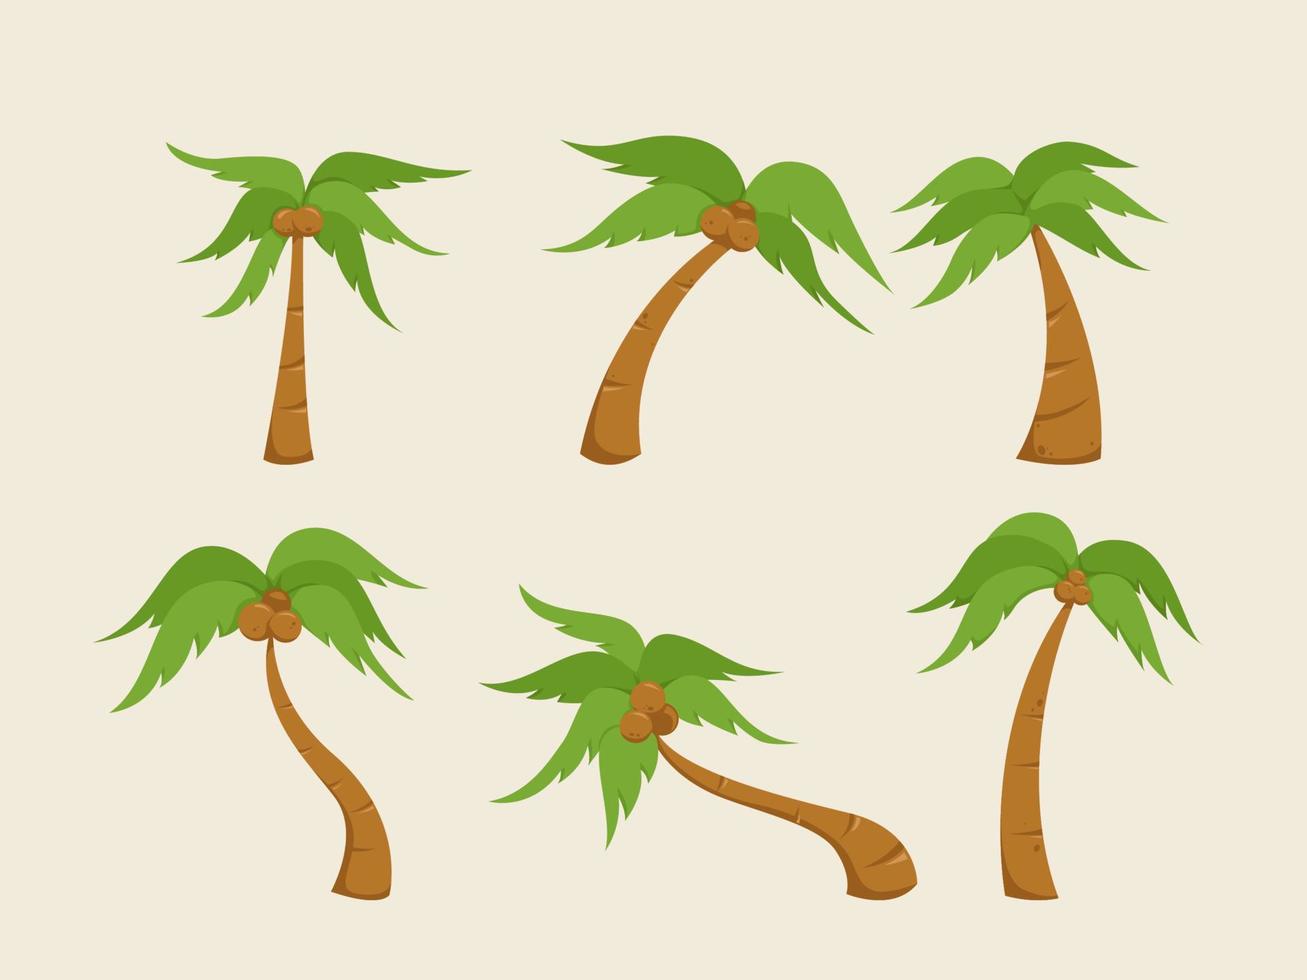 sammlungssatz einzelner kokospalmen-vektorillustration vektor